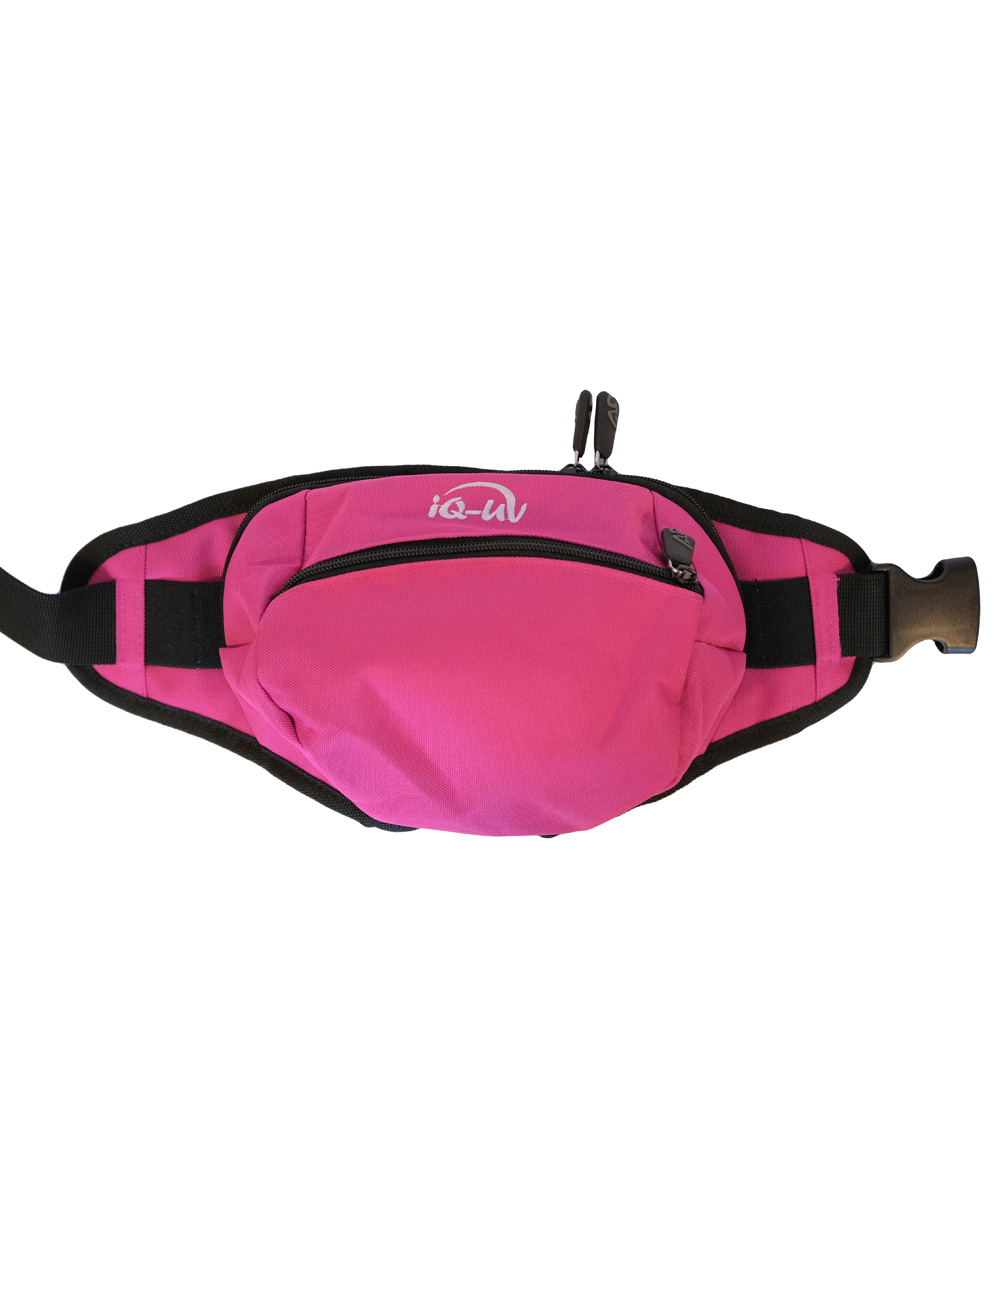 Hüfttasche mit Reißverschluss pink